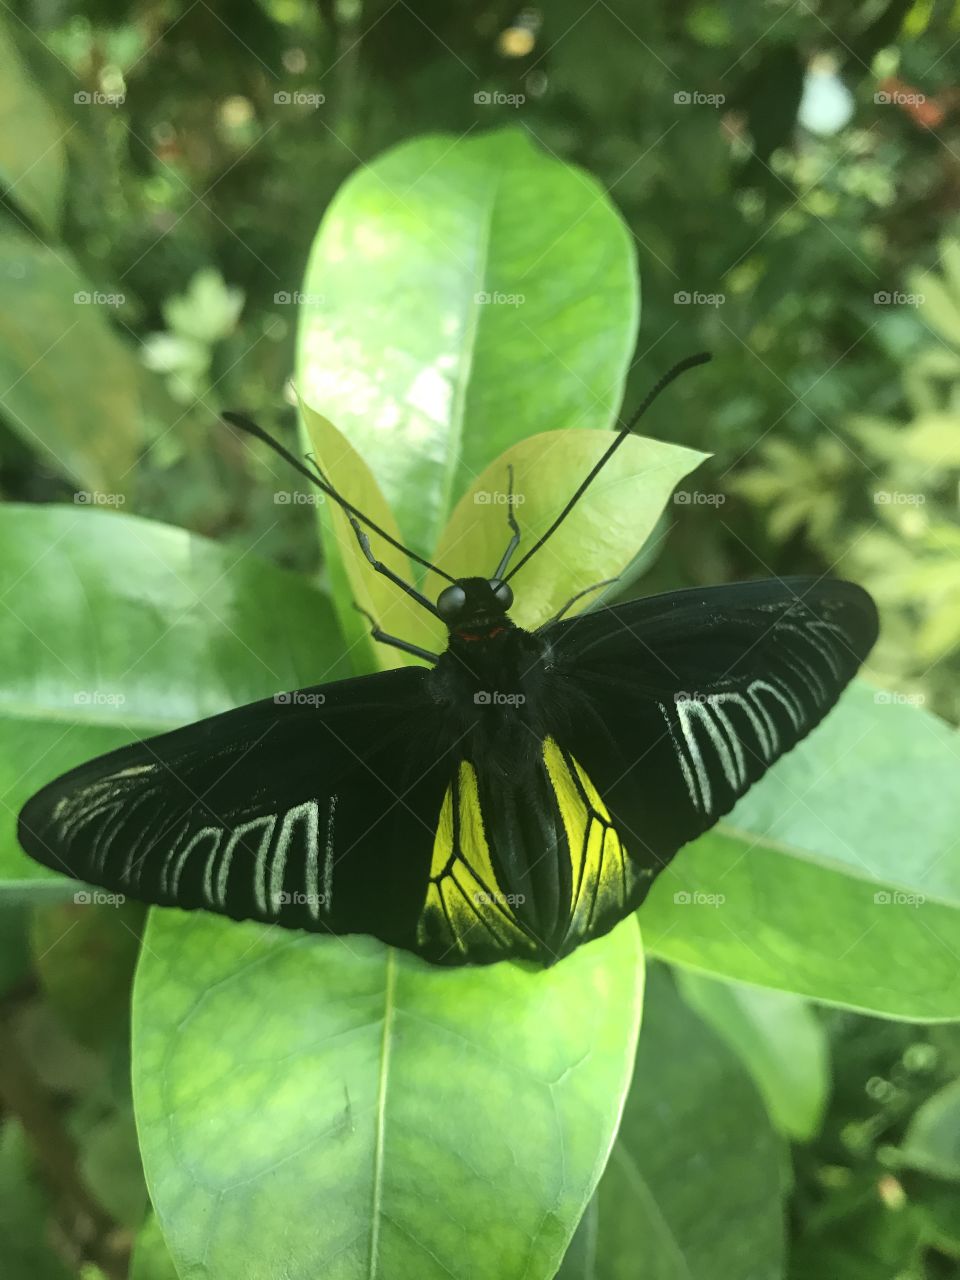 Butterfly inside Key West butterfly conservatory 